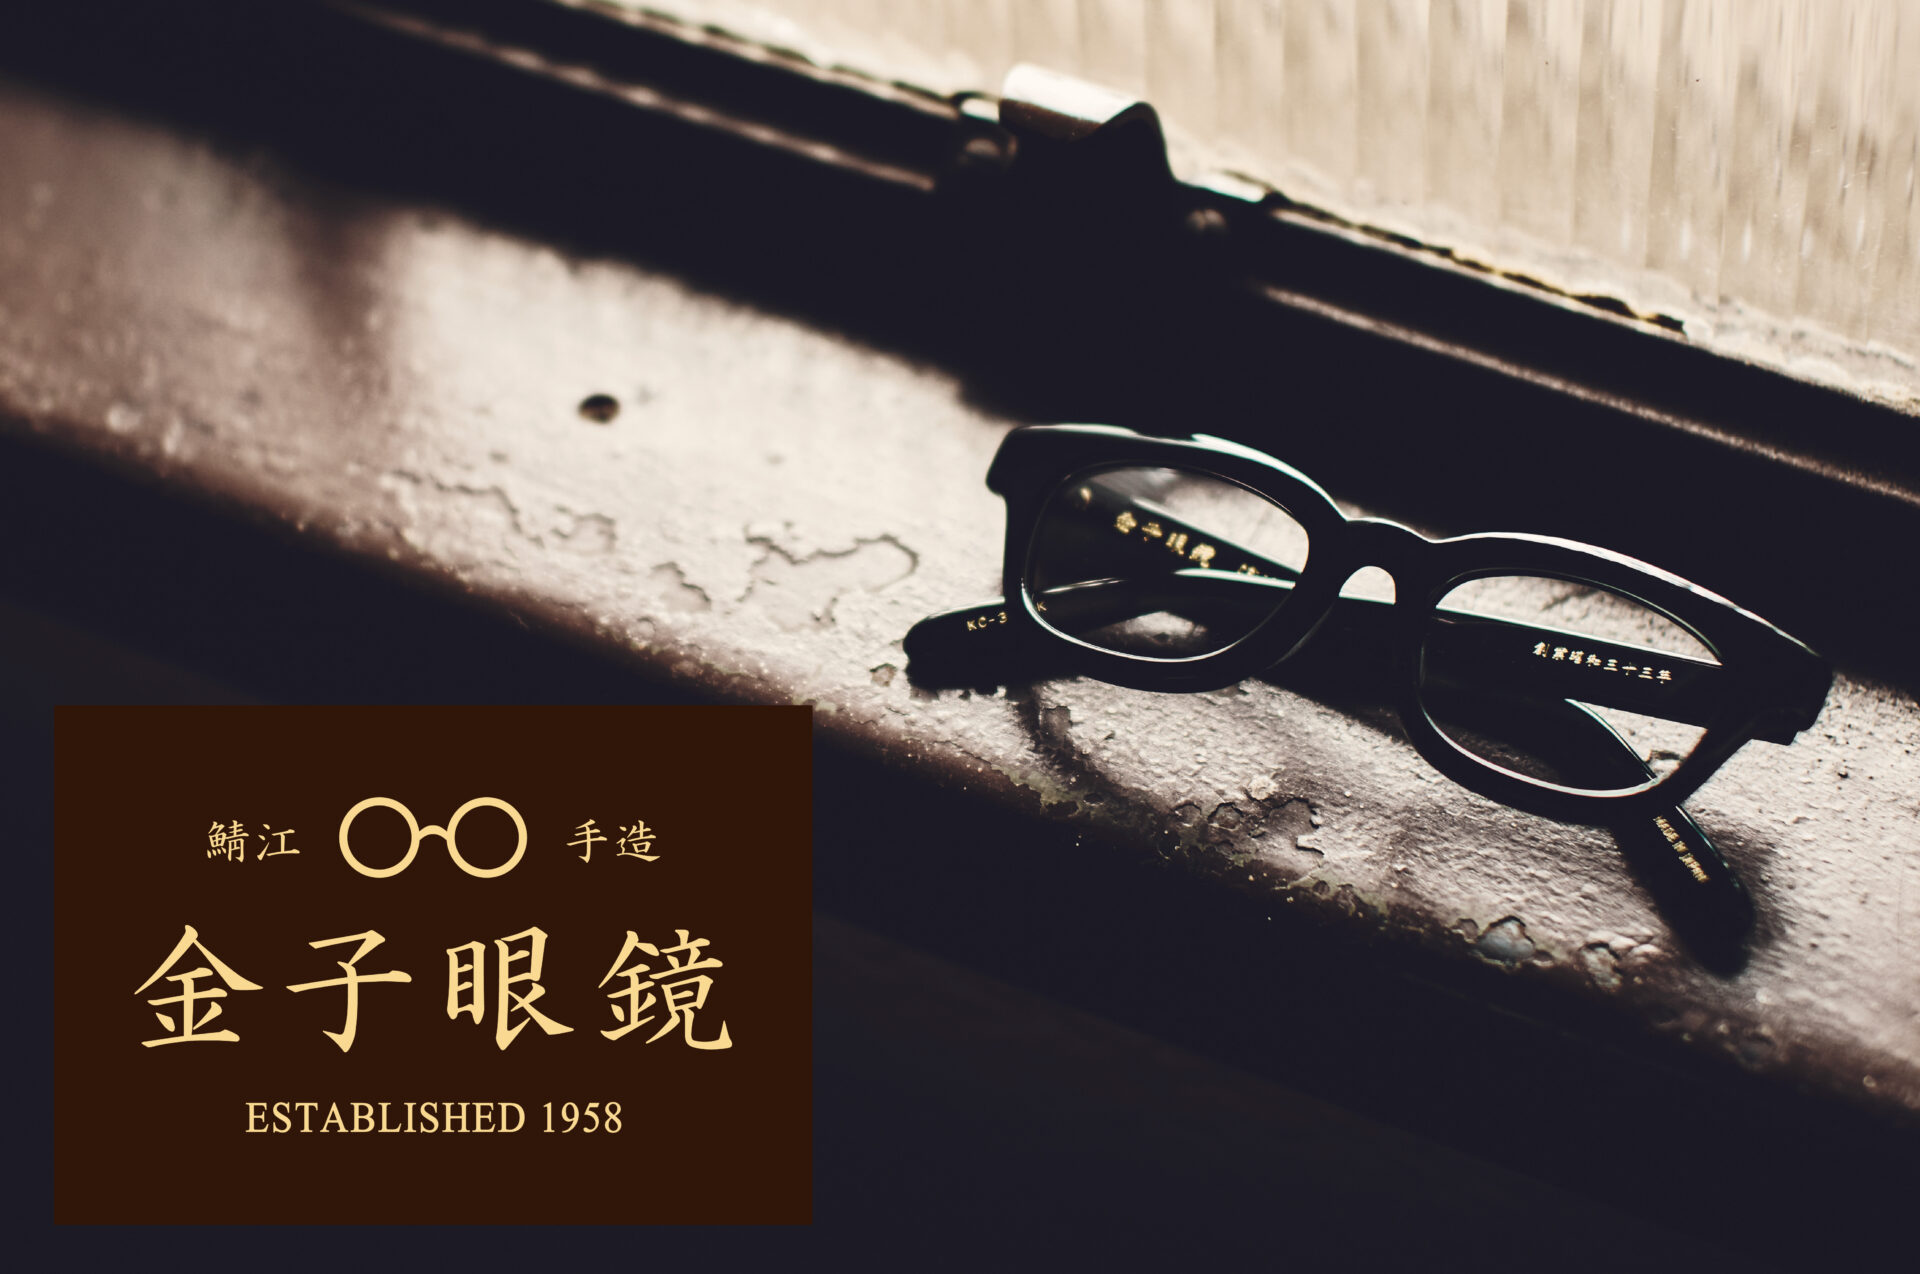 金子眼鏡 全国直営店で使える 
眼鏡引換券 Bronze（3万円相当）